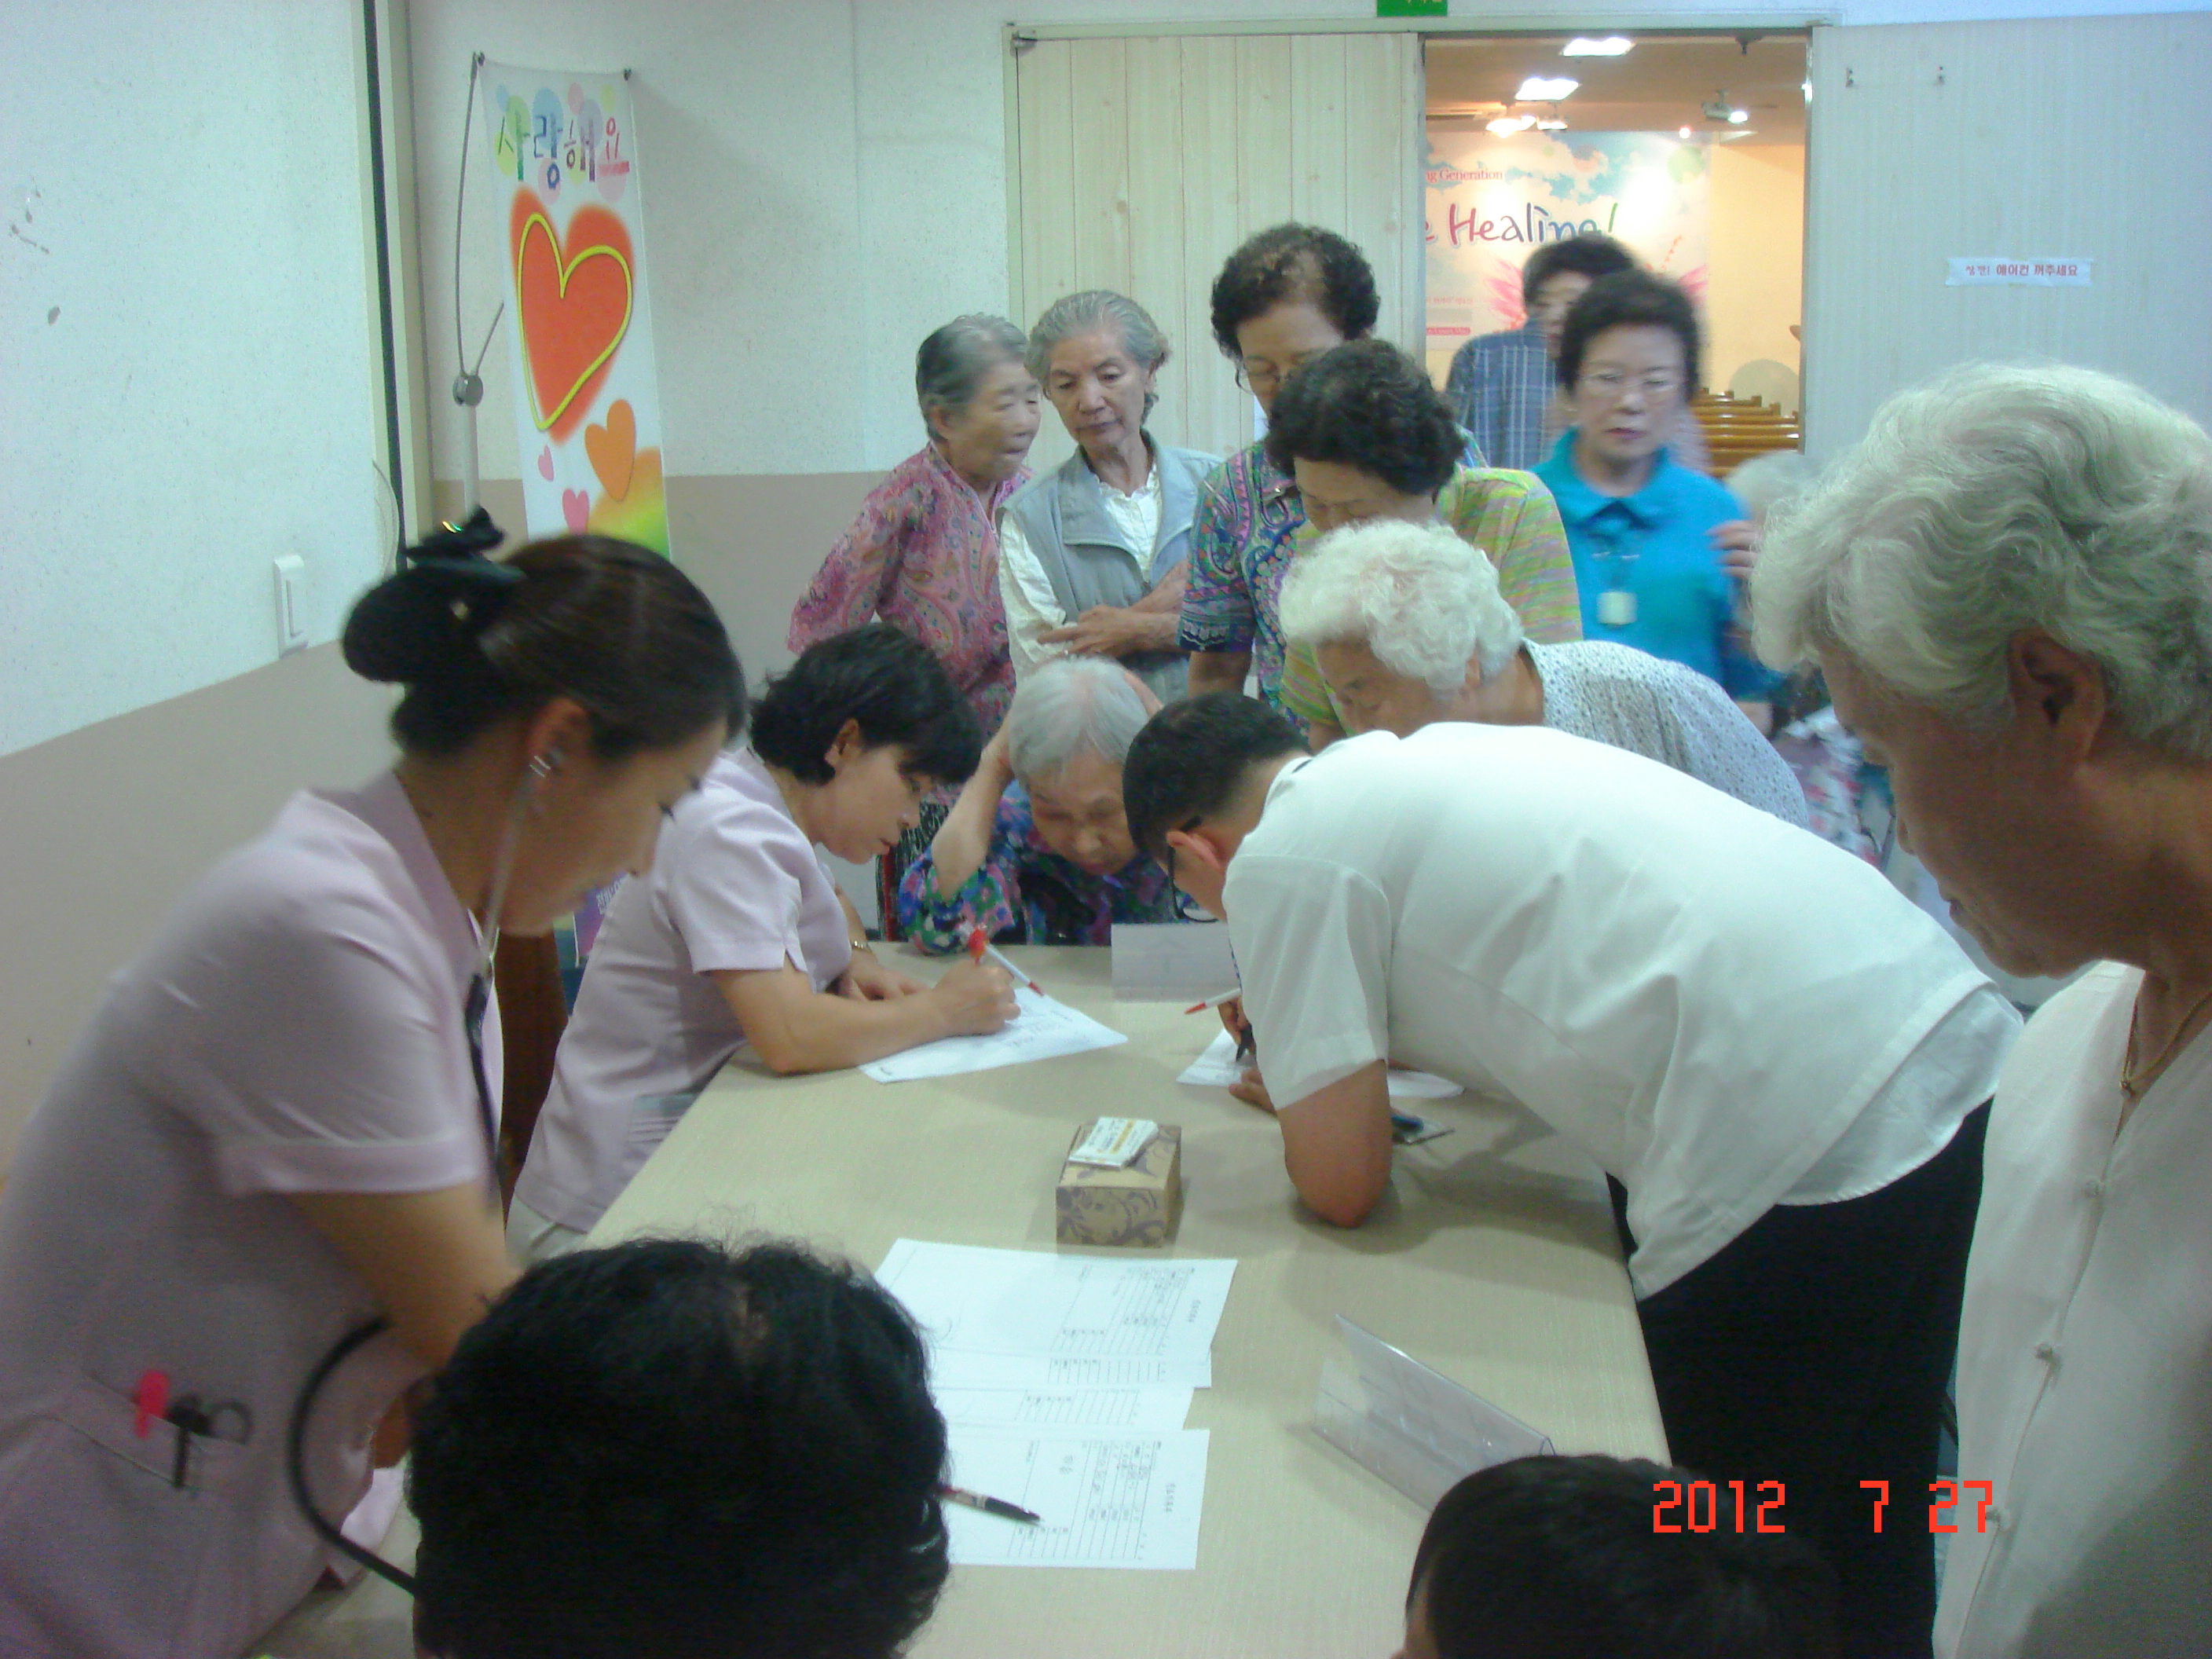 2012년 7월 27일 - 호산나교회 의료봉사 게시글의 7번째 첨부파일입니다.